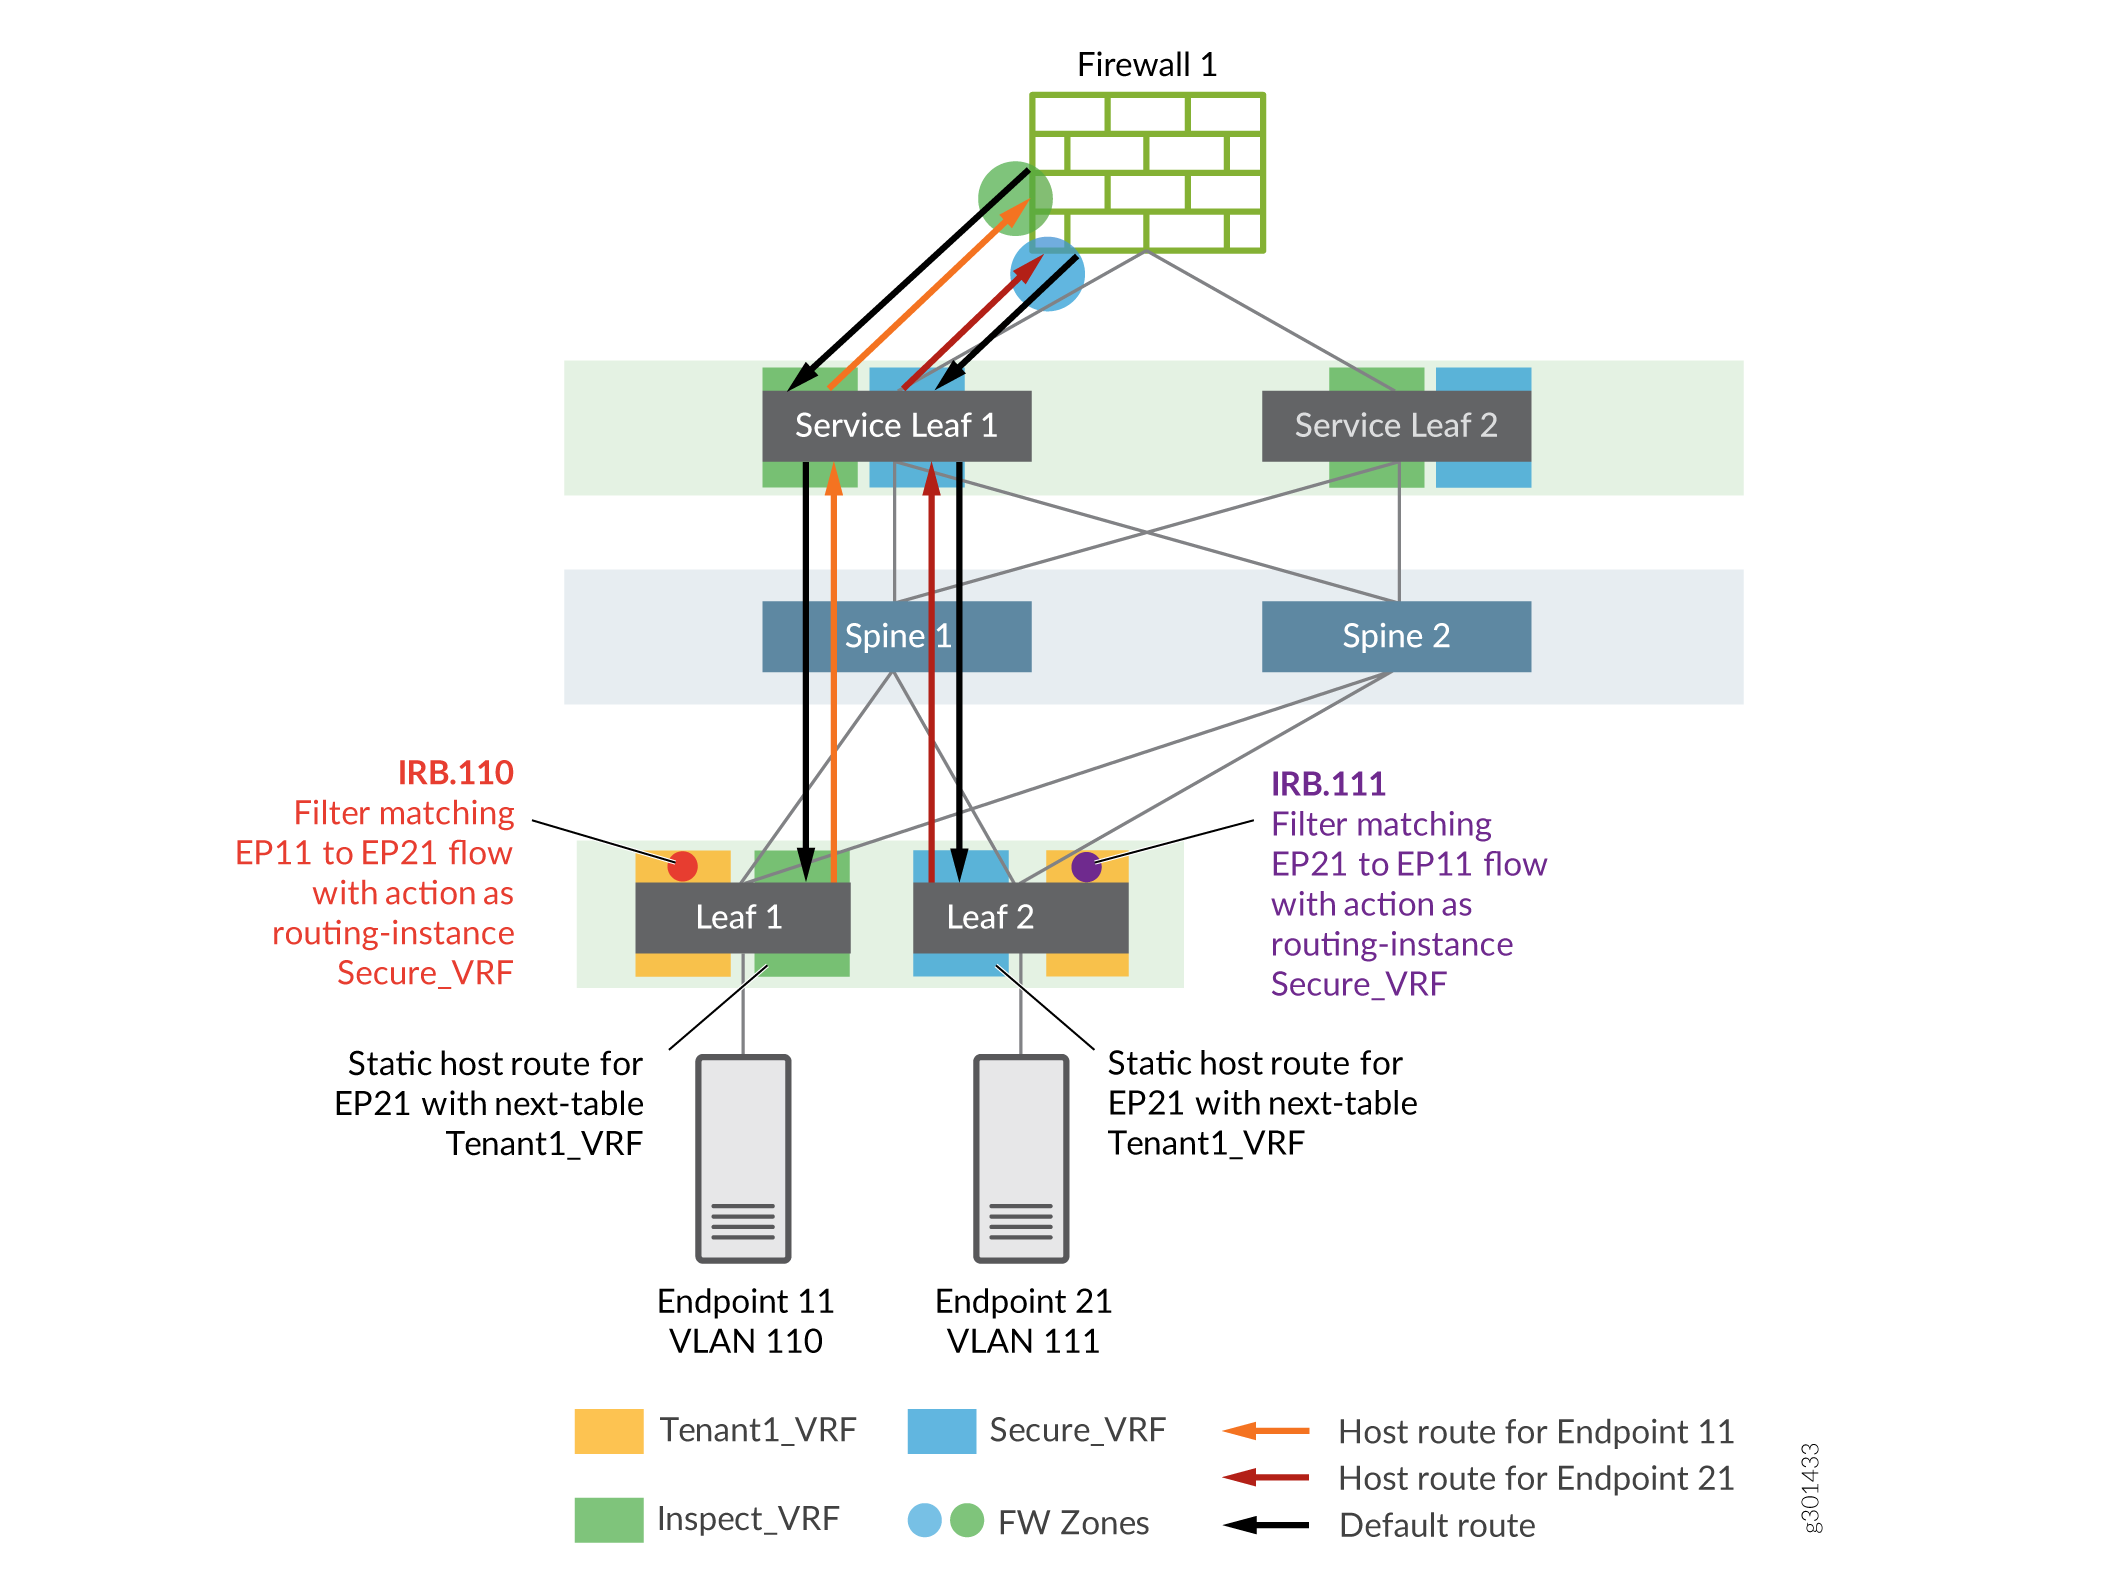 Inspected traffic flow for Intra-VRF Inter-VLAN traffic